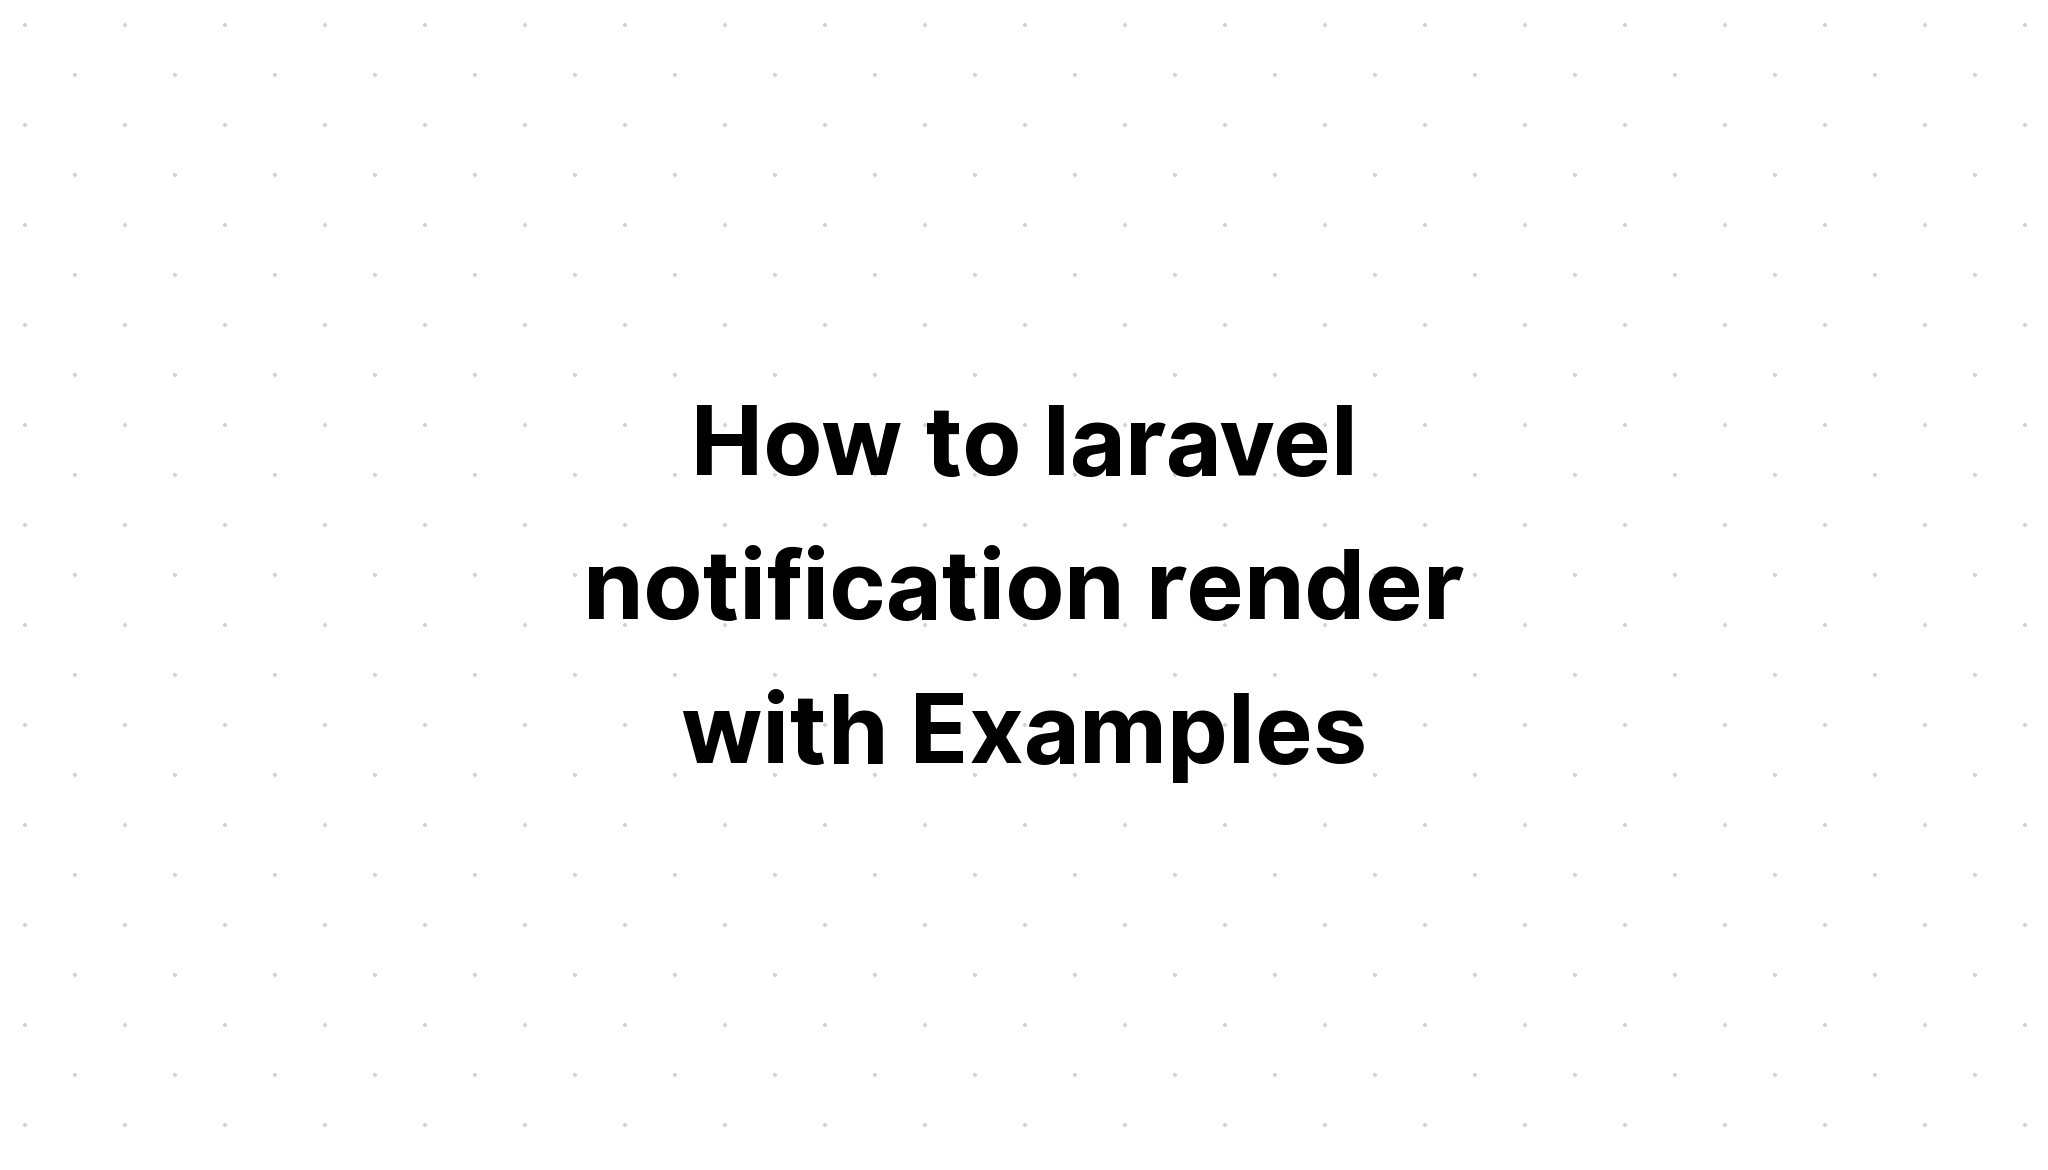 Cách kết xuất thông báo laravel với các ví dụ